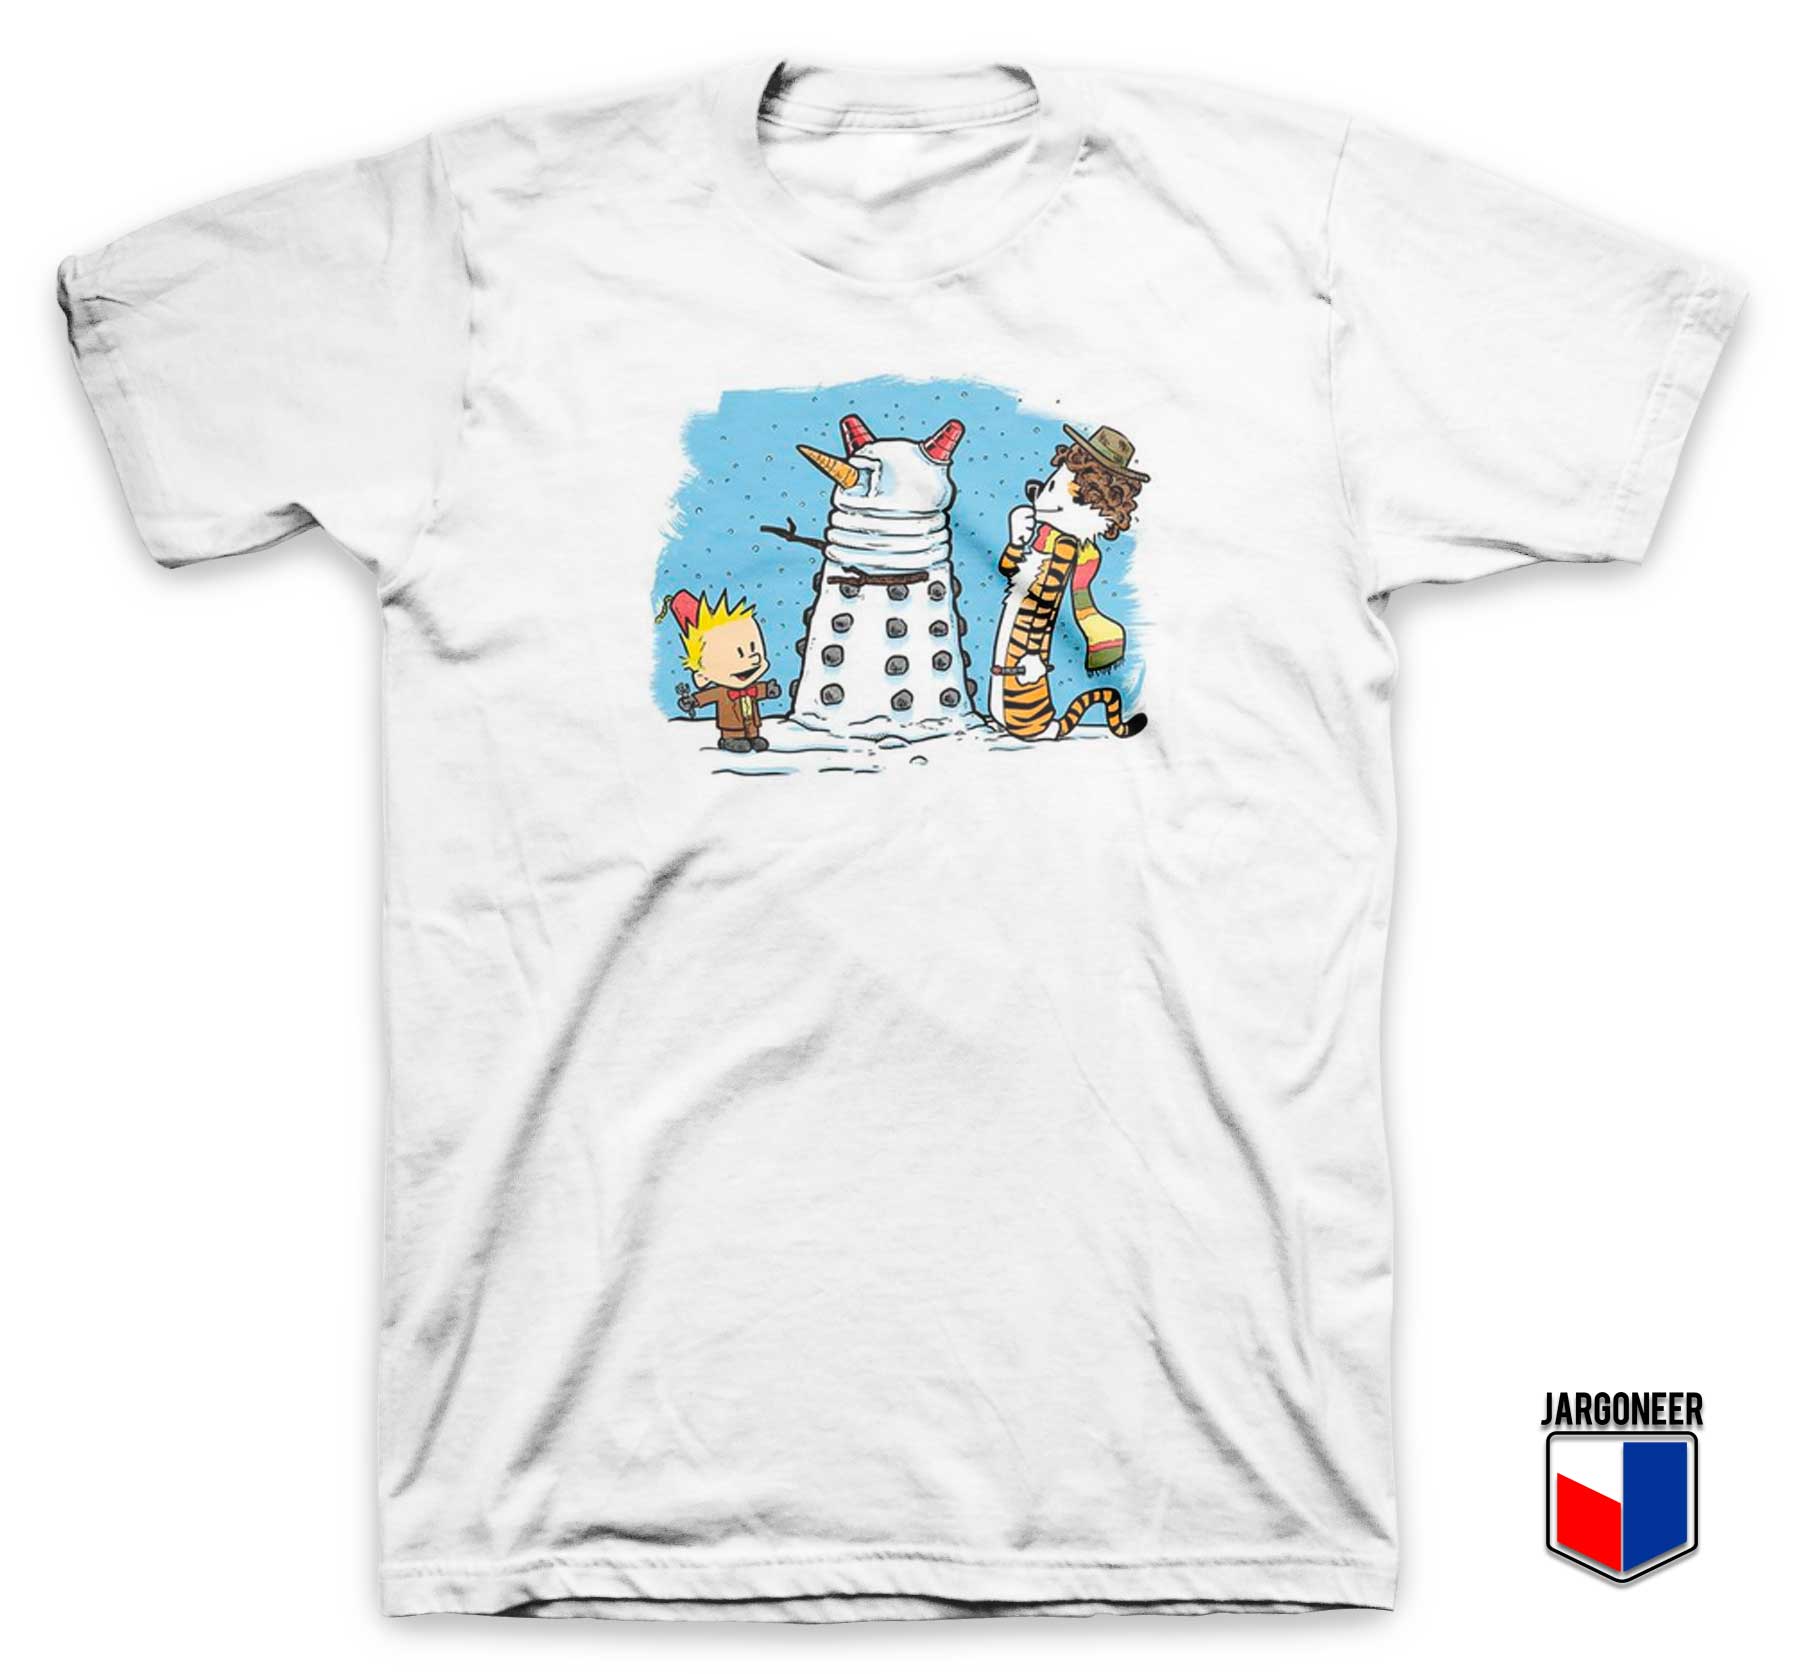 The Snow Dalek T Shirt - Shop Unique Graphic Cool Shirt Designs